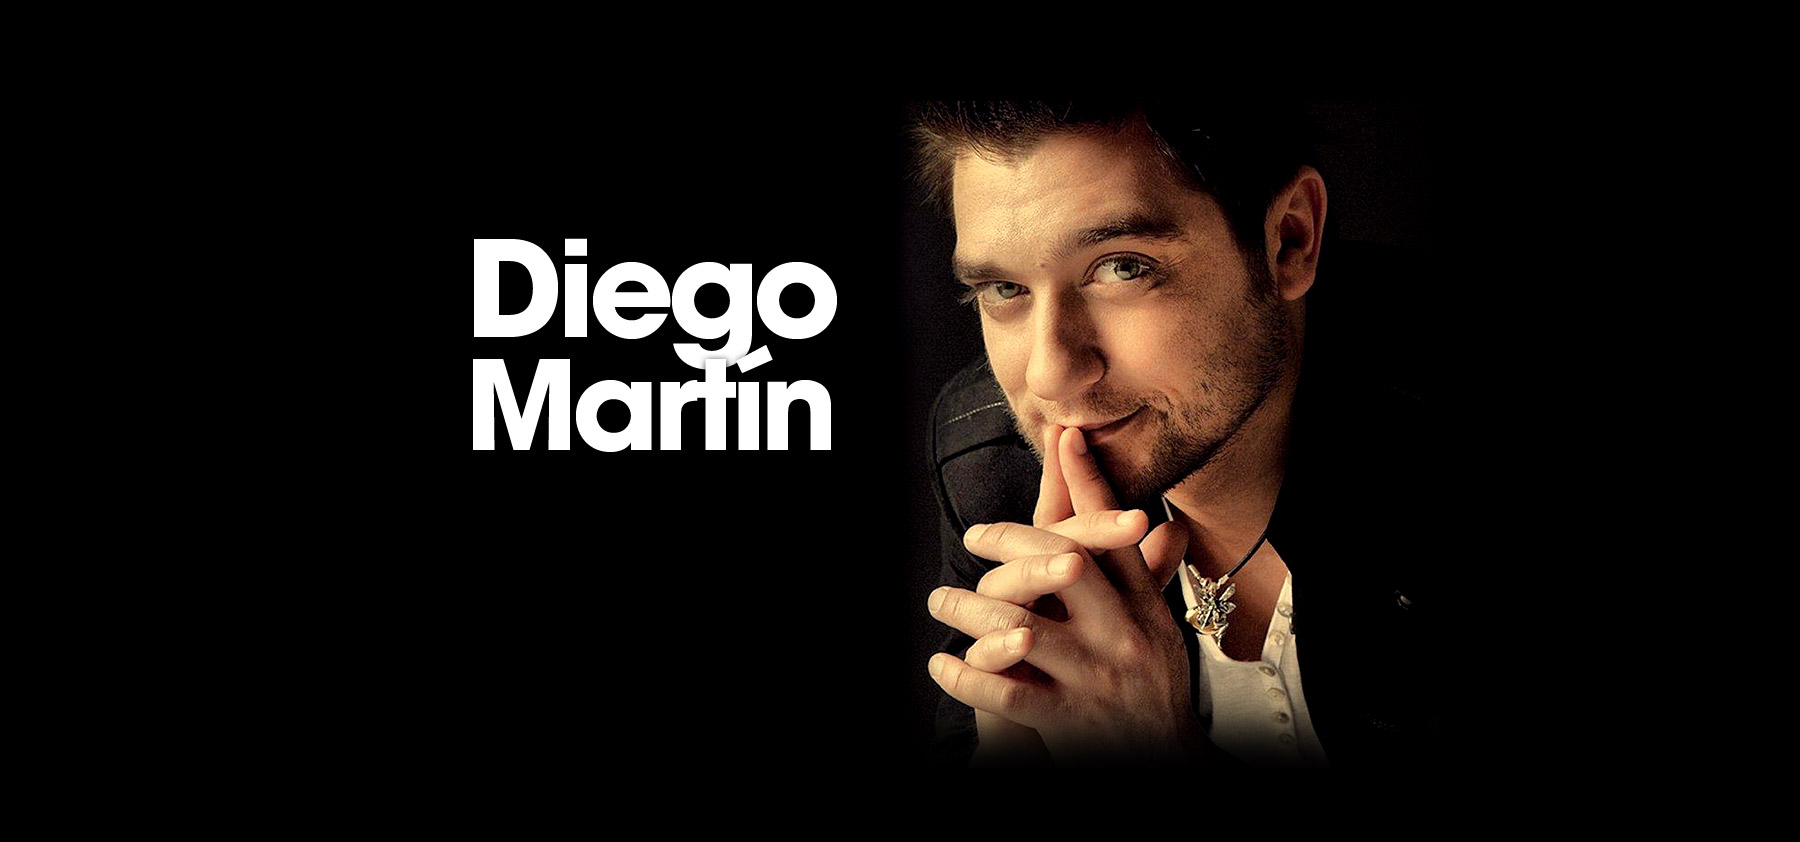 Diego martín actor